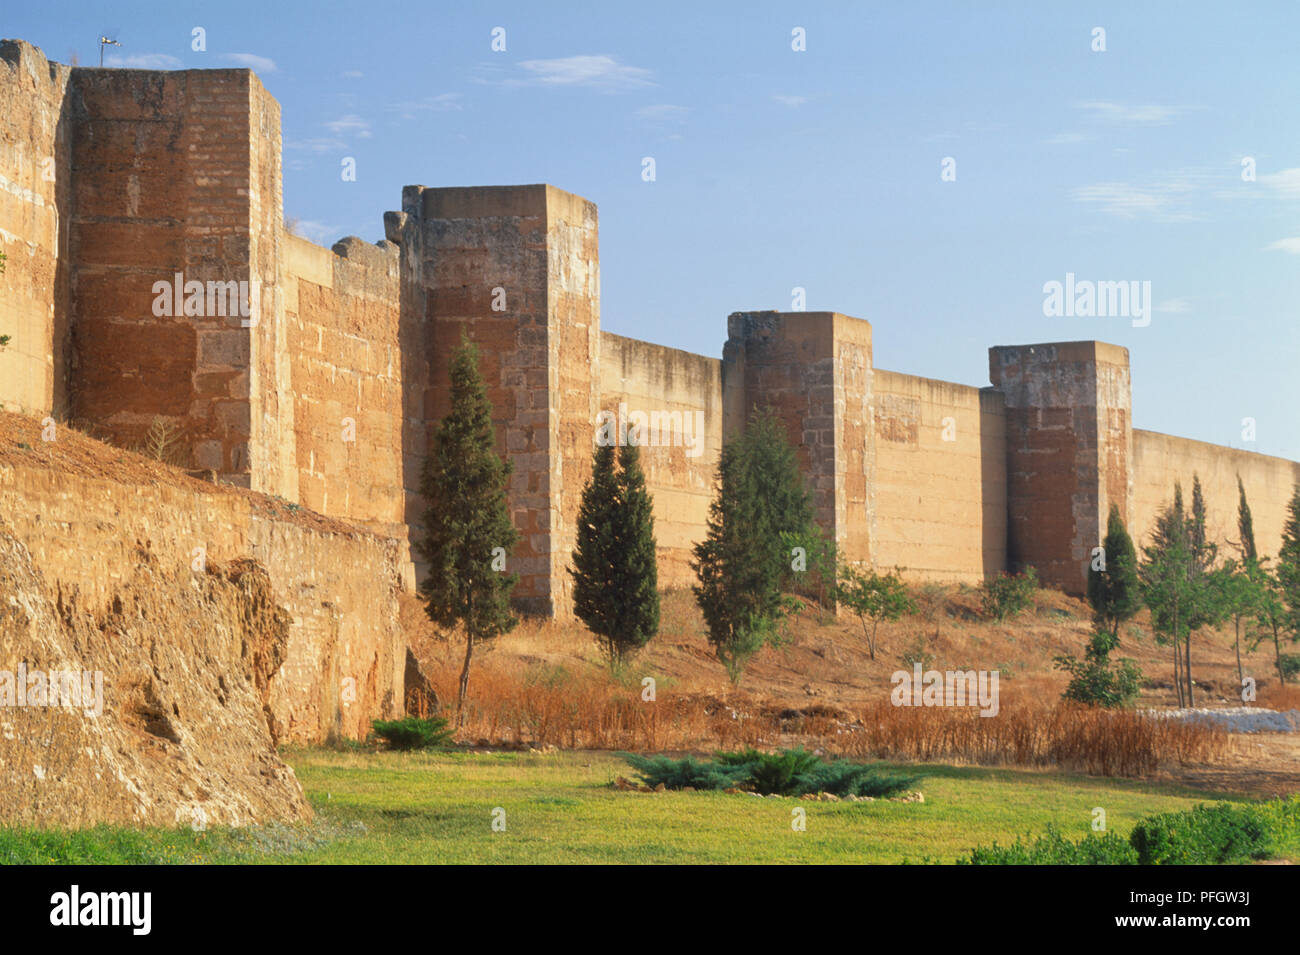 Spanien, Andalusien, Huelva, El Condado, Niebla, maurischen stein Mauern in der Stadt. Stockfoto